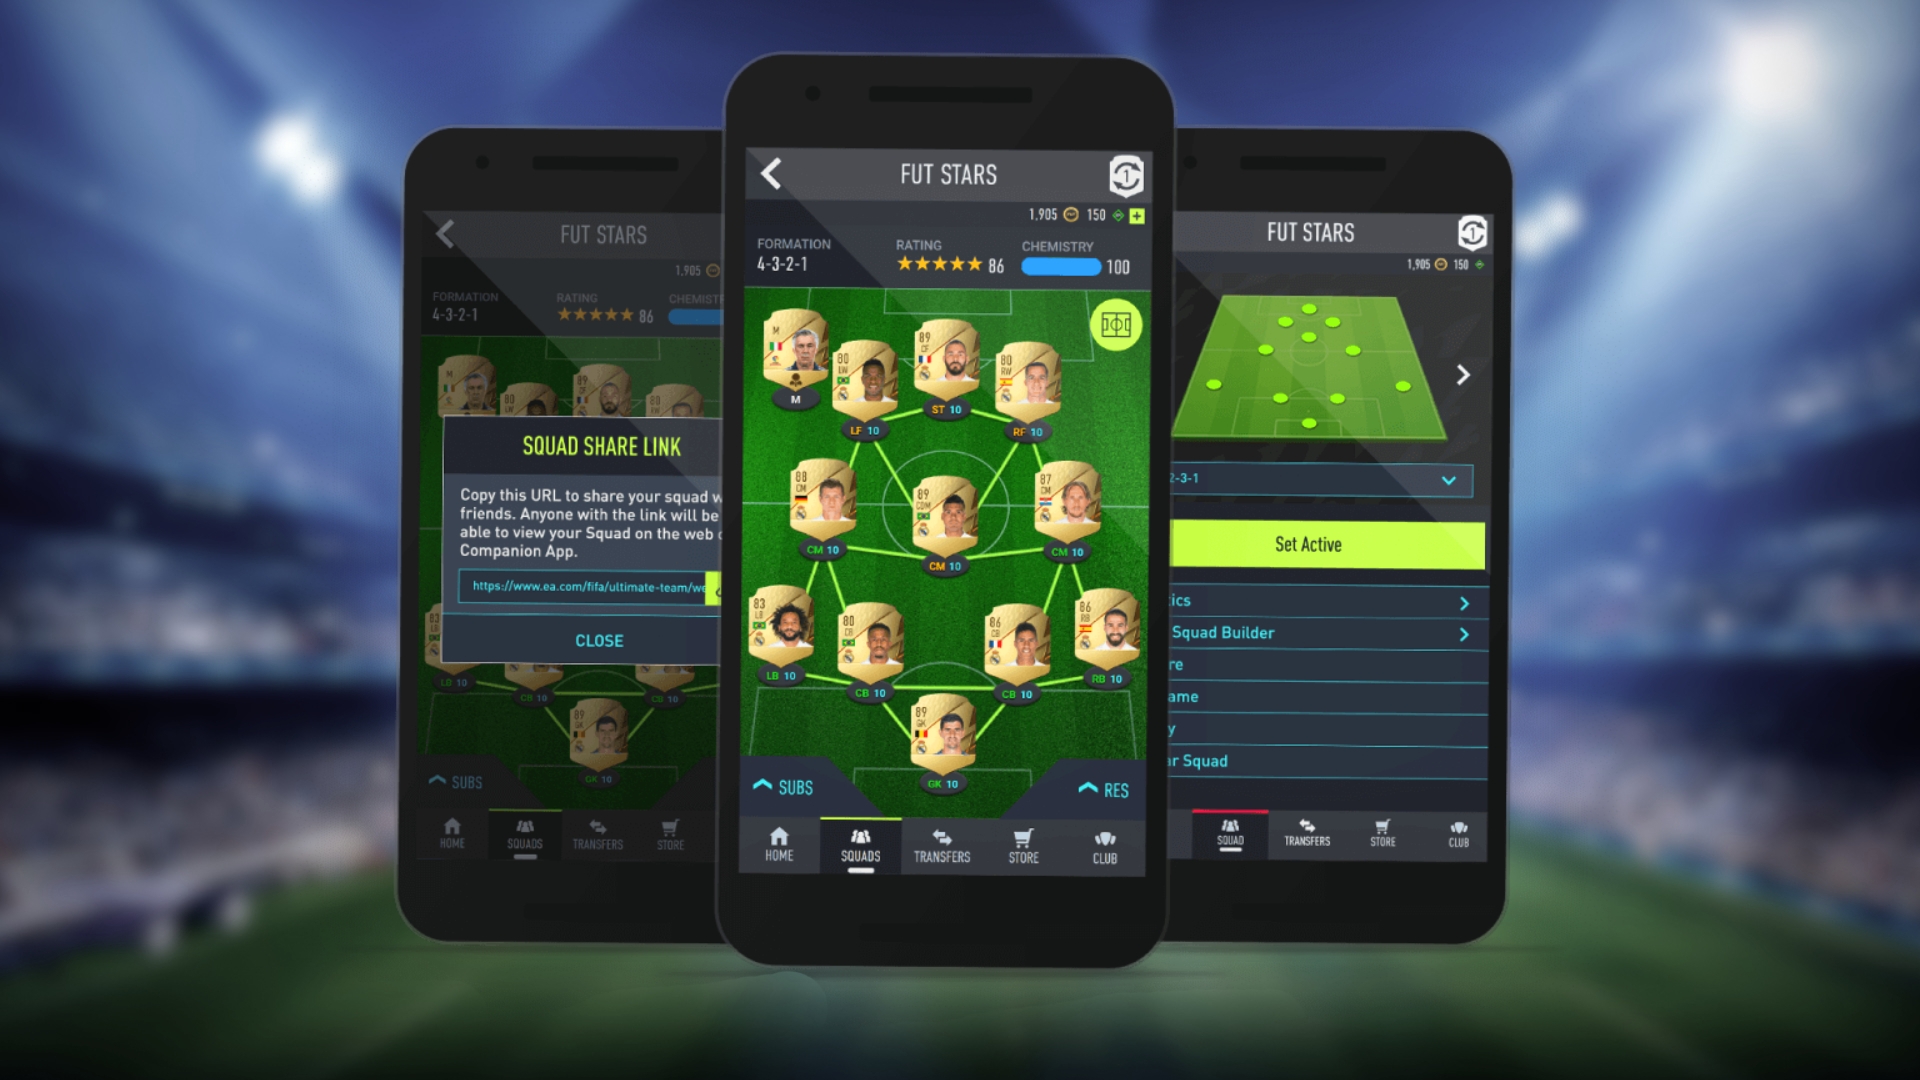 FIFA 22 Companion App – Info, Updates & More